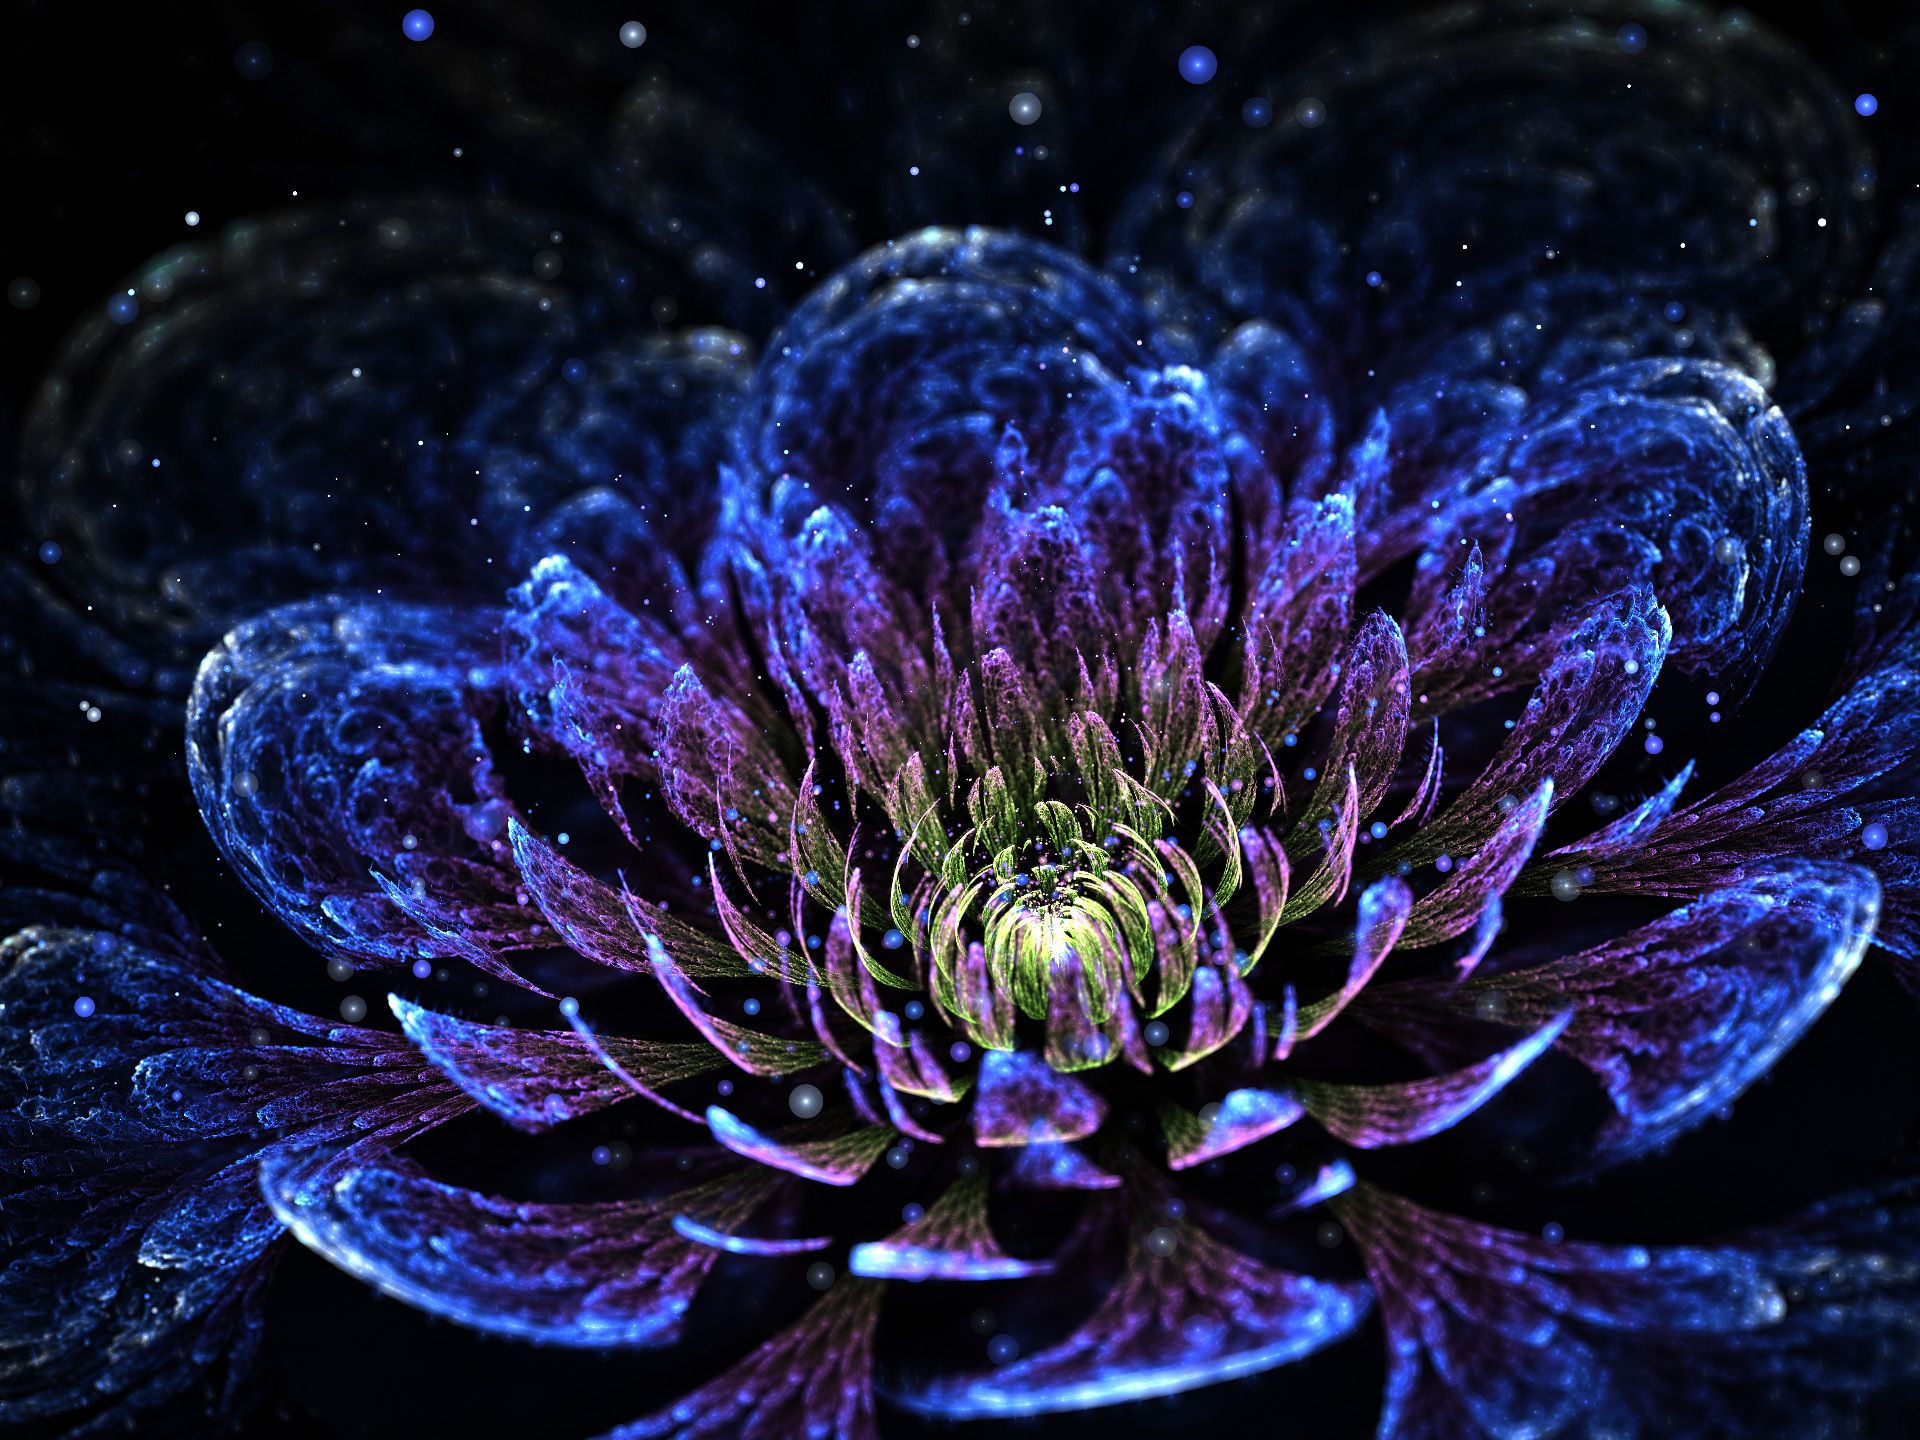 fractal art flowers | abstract, fractal art, petals flower, sfondi ...